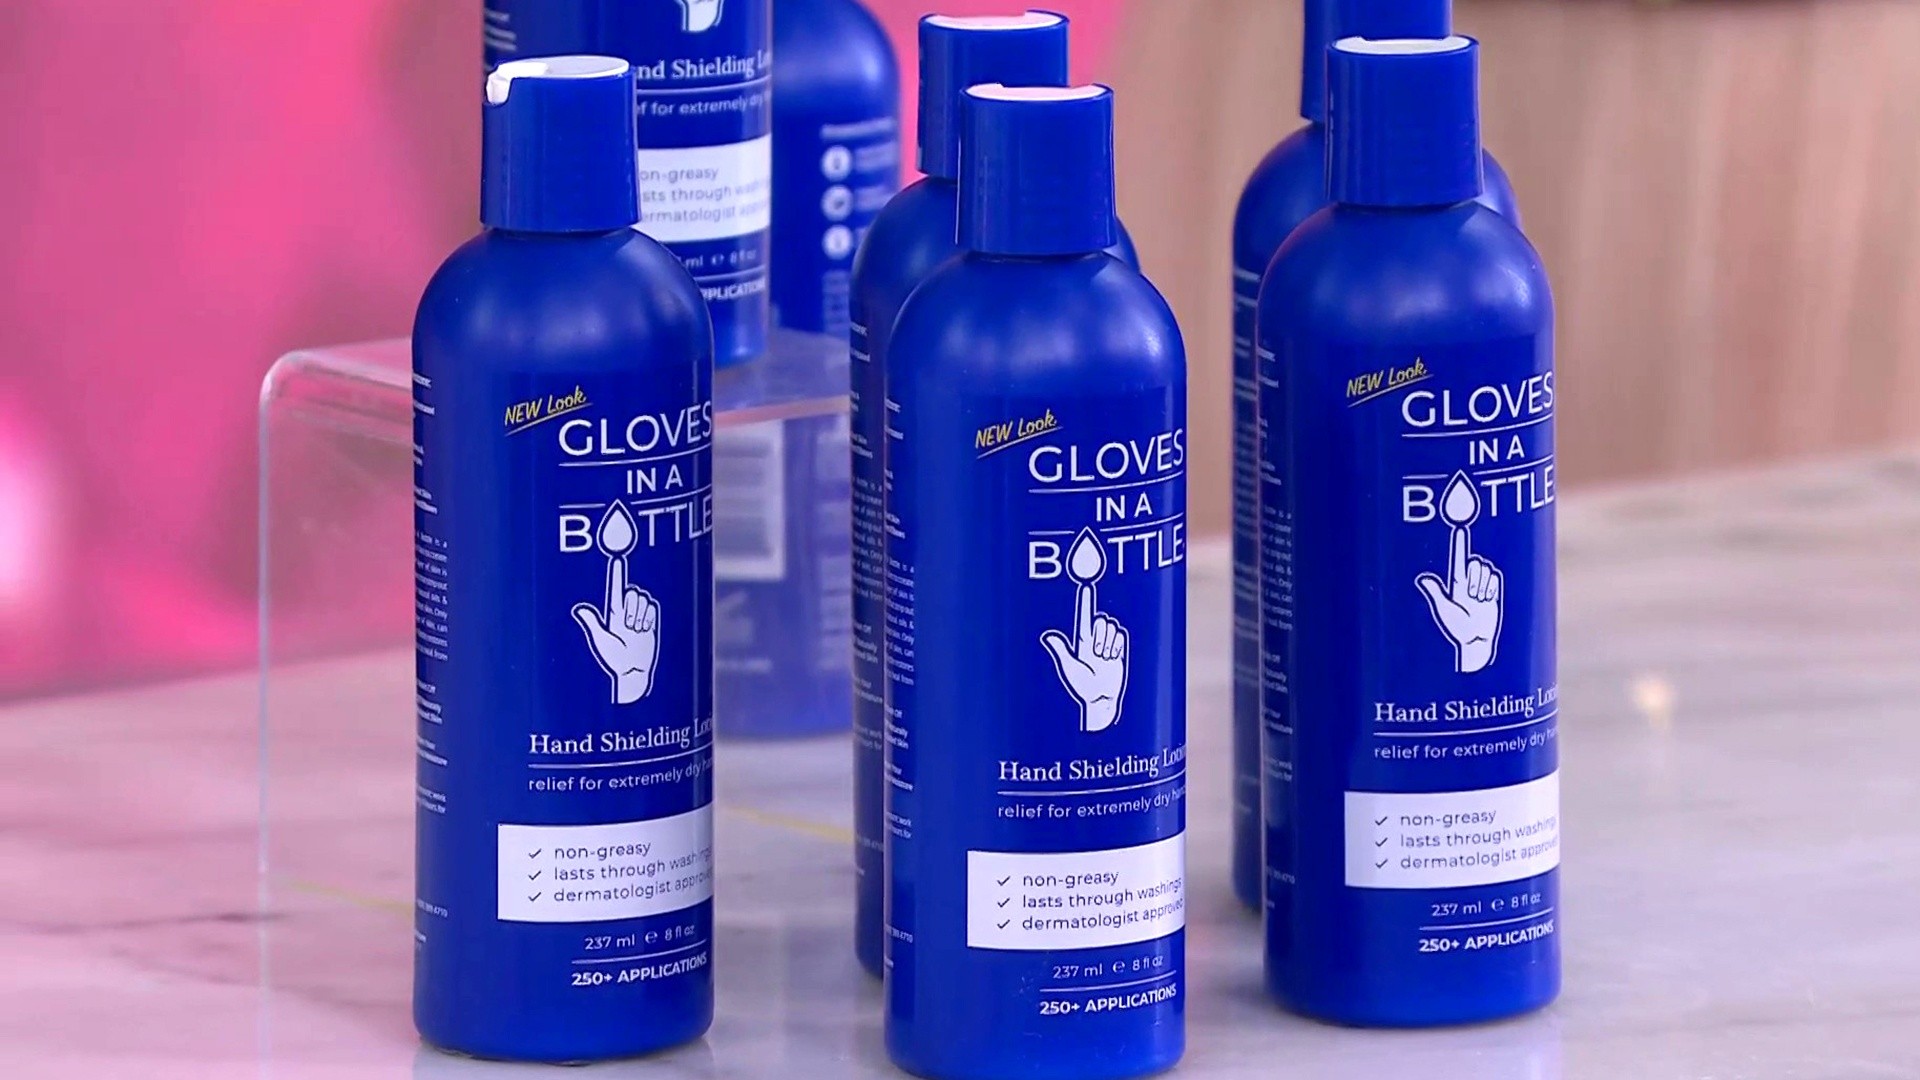 Gloves in a Bottle shielding lotion